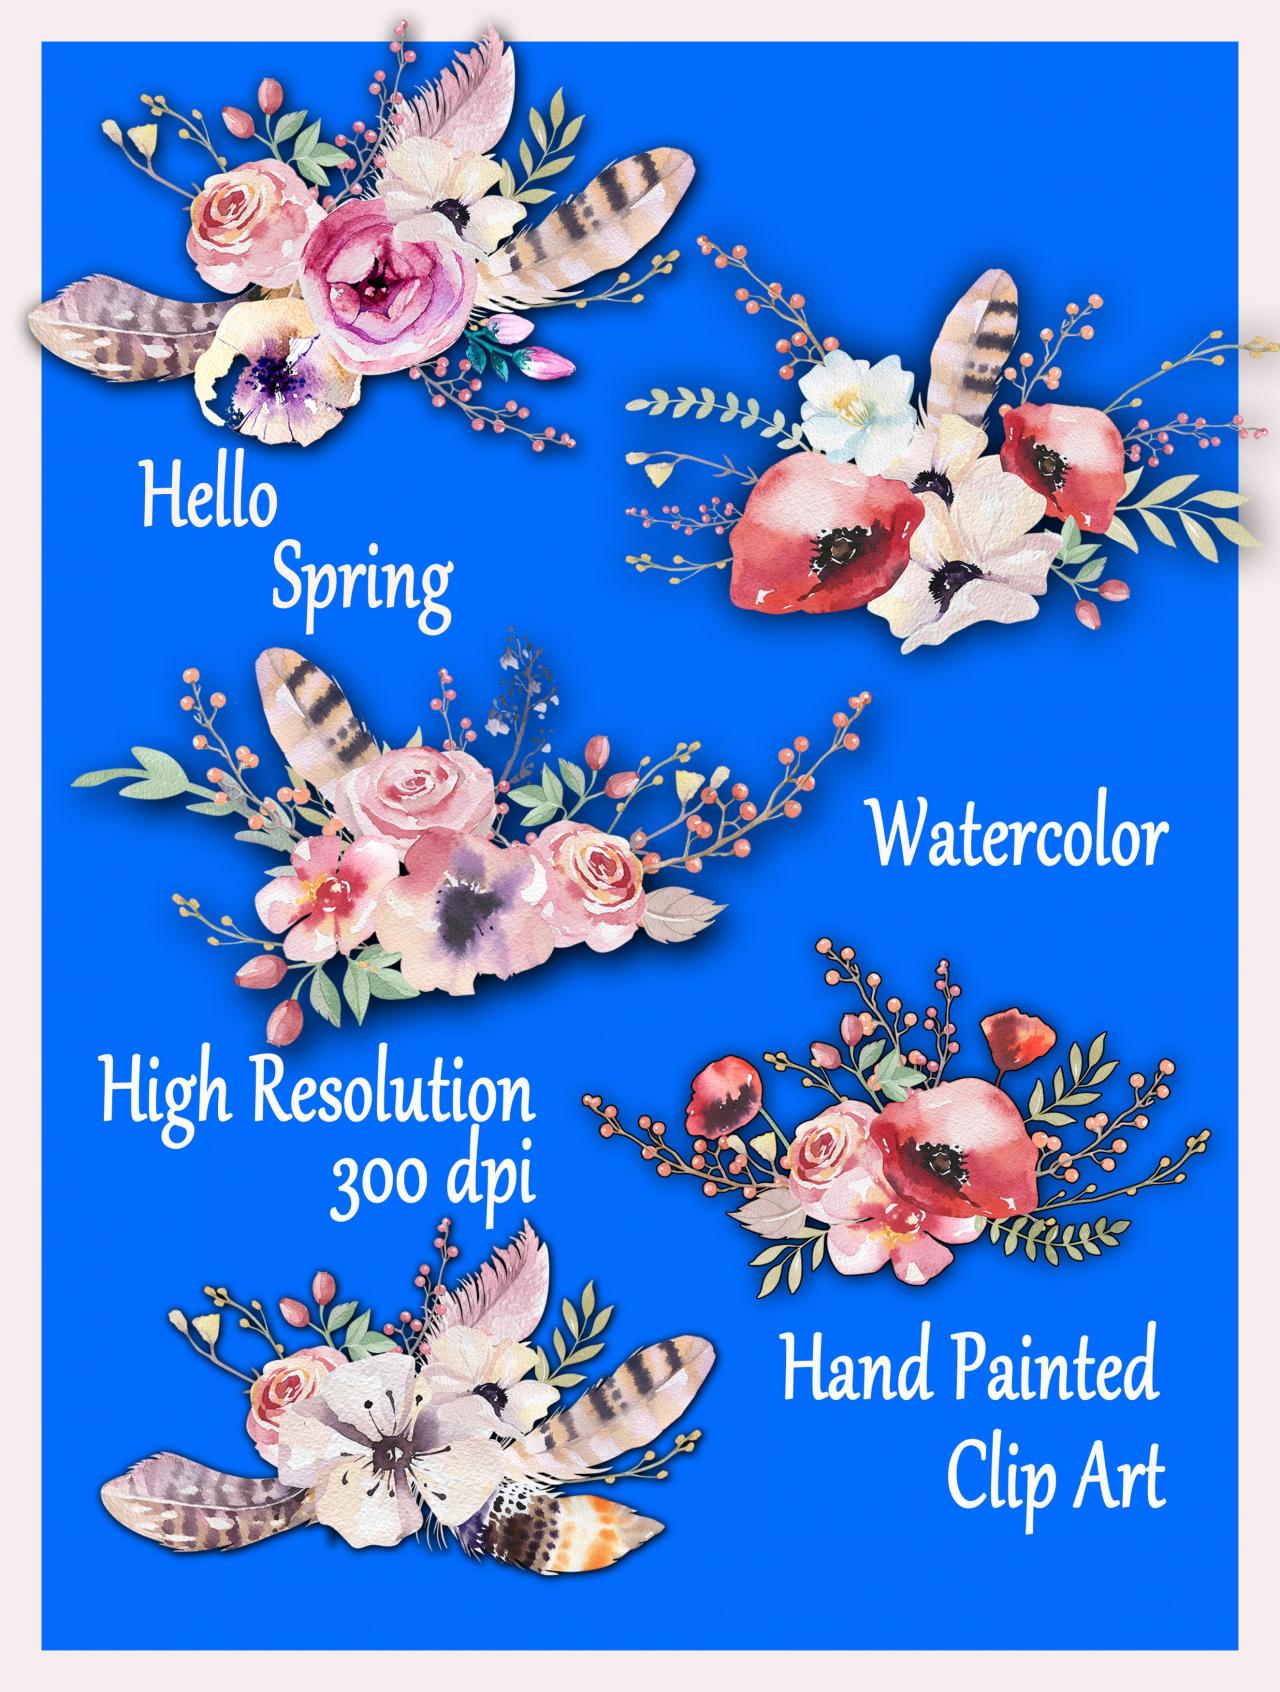 Watercolor Floral Bouquet Clipart: "floral Clipart" Wedding Clip Art Floral Clip Art Diy Elements Wedding Invitation